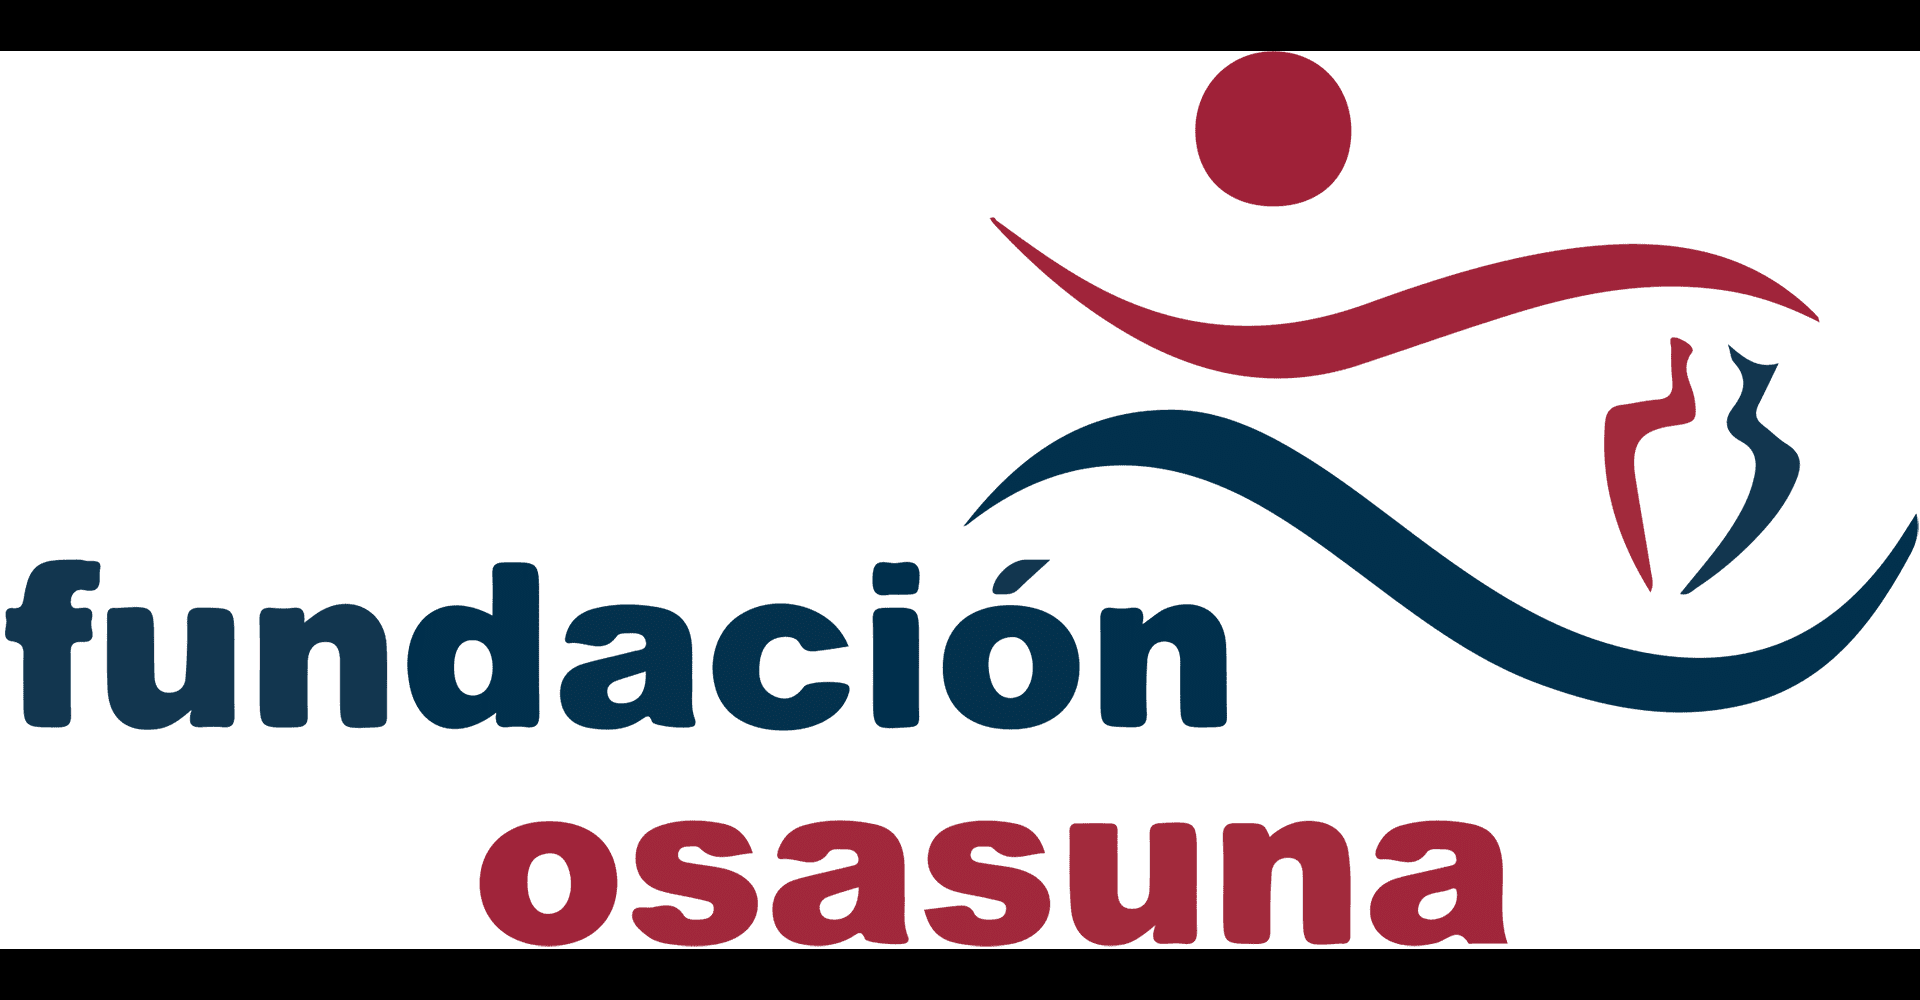 La atención en las oficinas del Club Atlético Osasuna y la Fundación Osasuna sufrirá modificaciones a causa del inicio de las obras de la reforma de El Sadar.